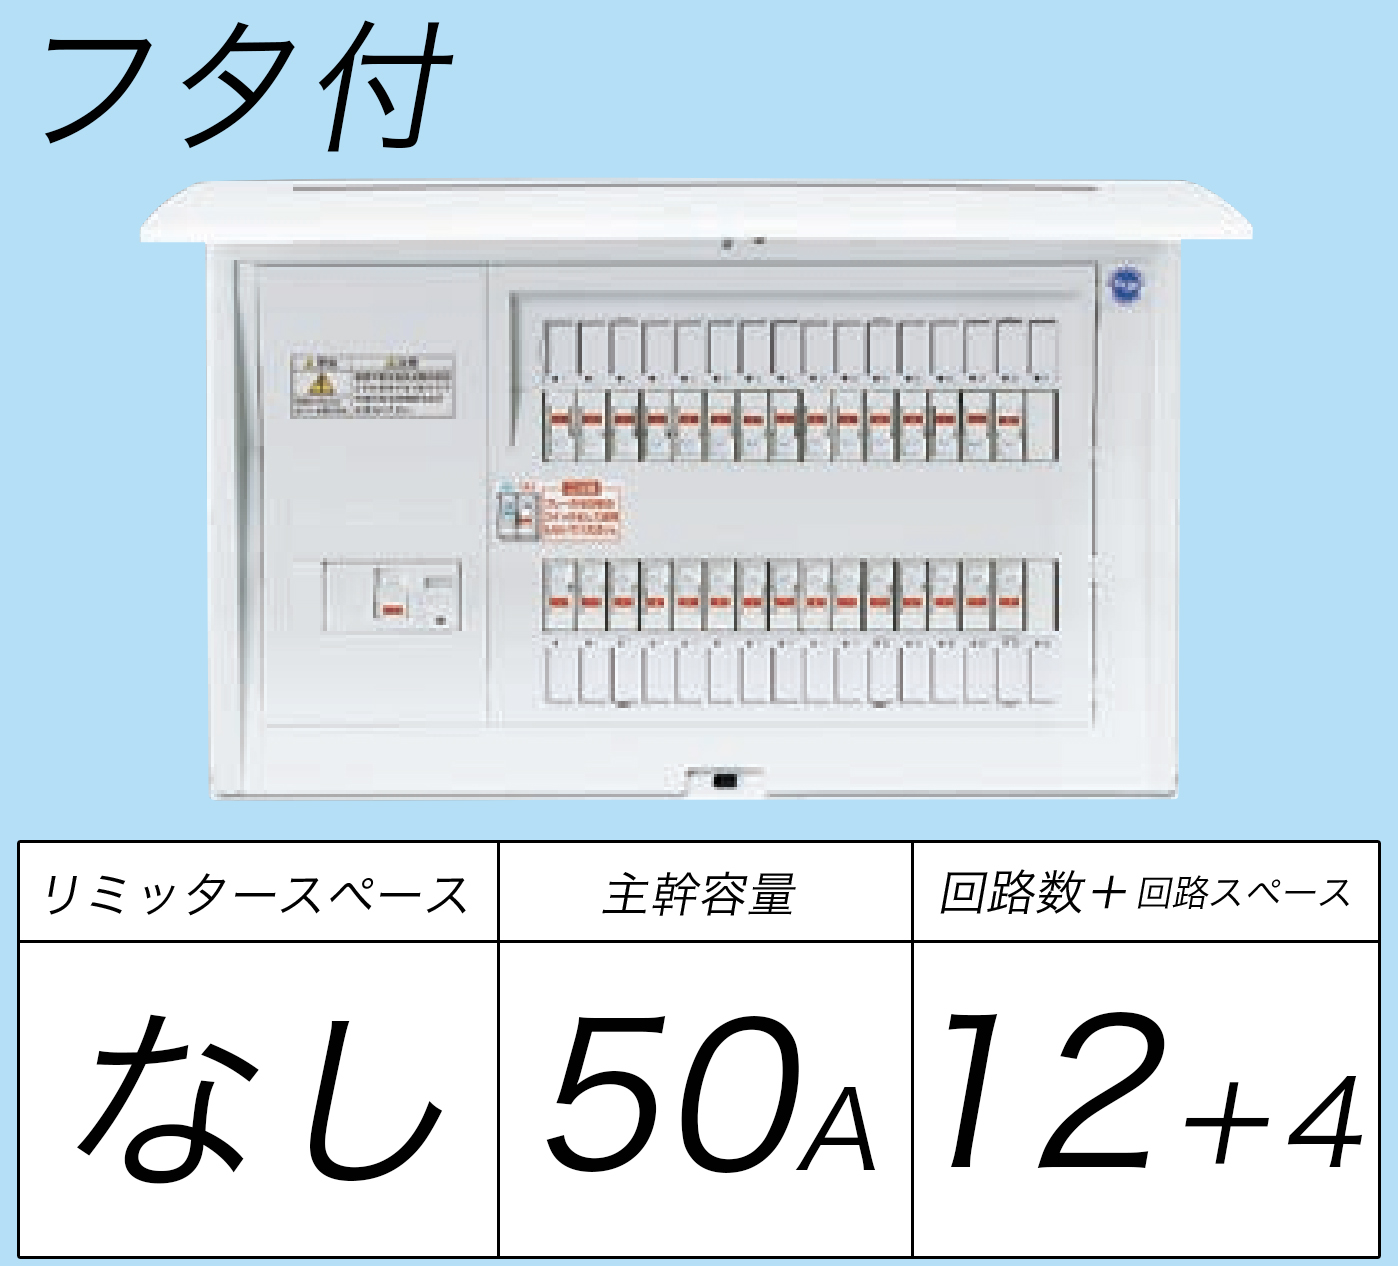 電気用品 パナソニック(Panasonic) コスモパネルコンパクト21 標準タイプ リミッタースペース付 40A14 BQR34142 - 4